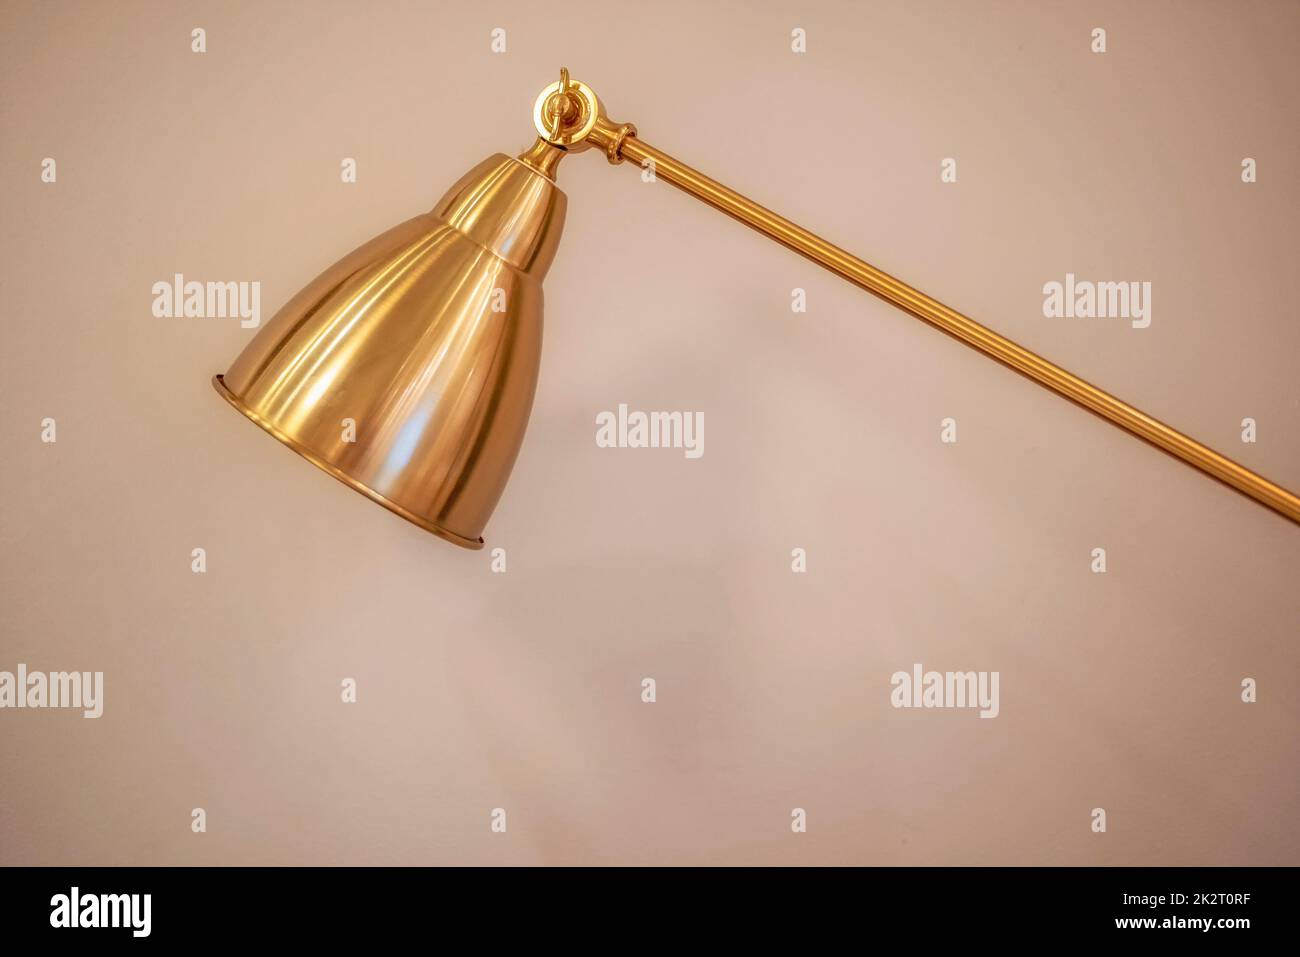 Golden desk lamp light modern copper background Stock Photo